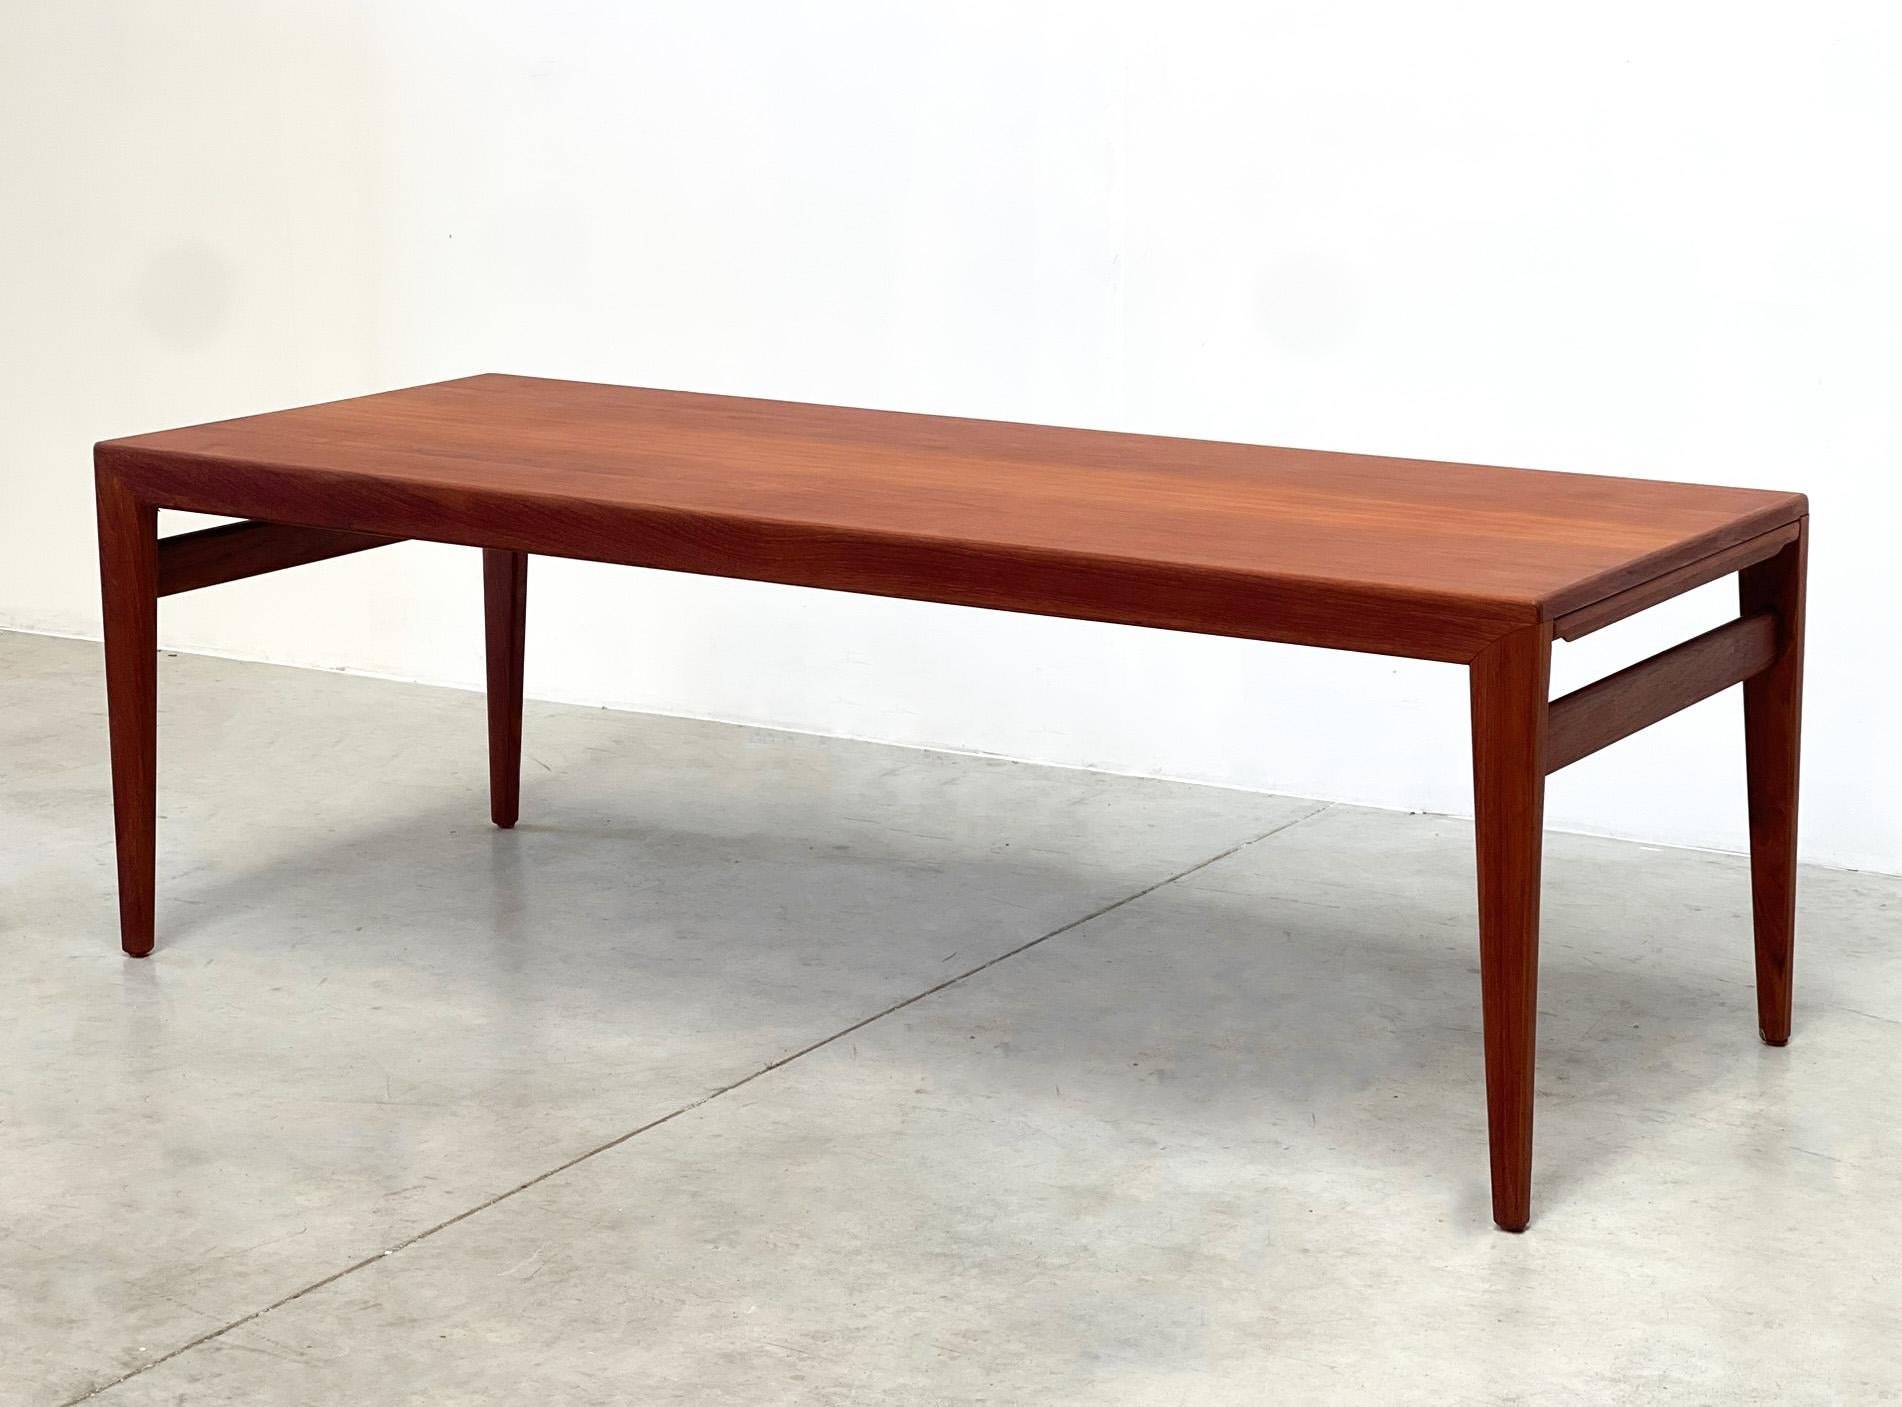 Johannes Anders Table basse
Très belle table basse polyvalente fabriquée au Danemark dans les années 70. La table a été conçue par l'un des plus célèbres designers danois, Johannes Anderssen. Johannes a conçu cette table pour l'usine Uldum